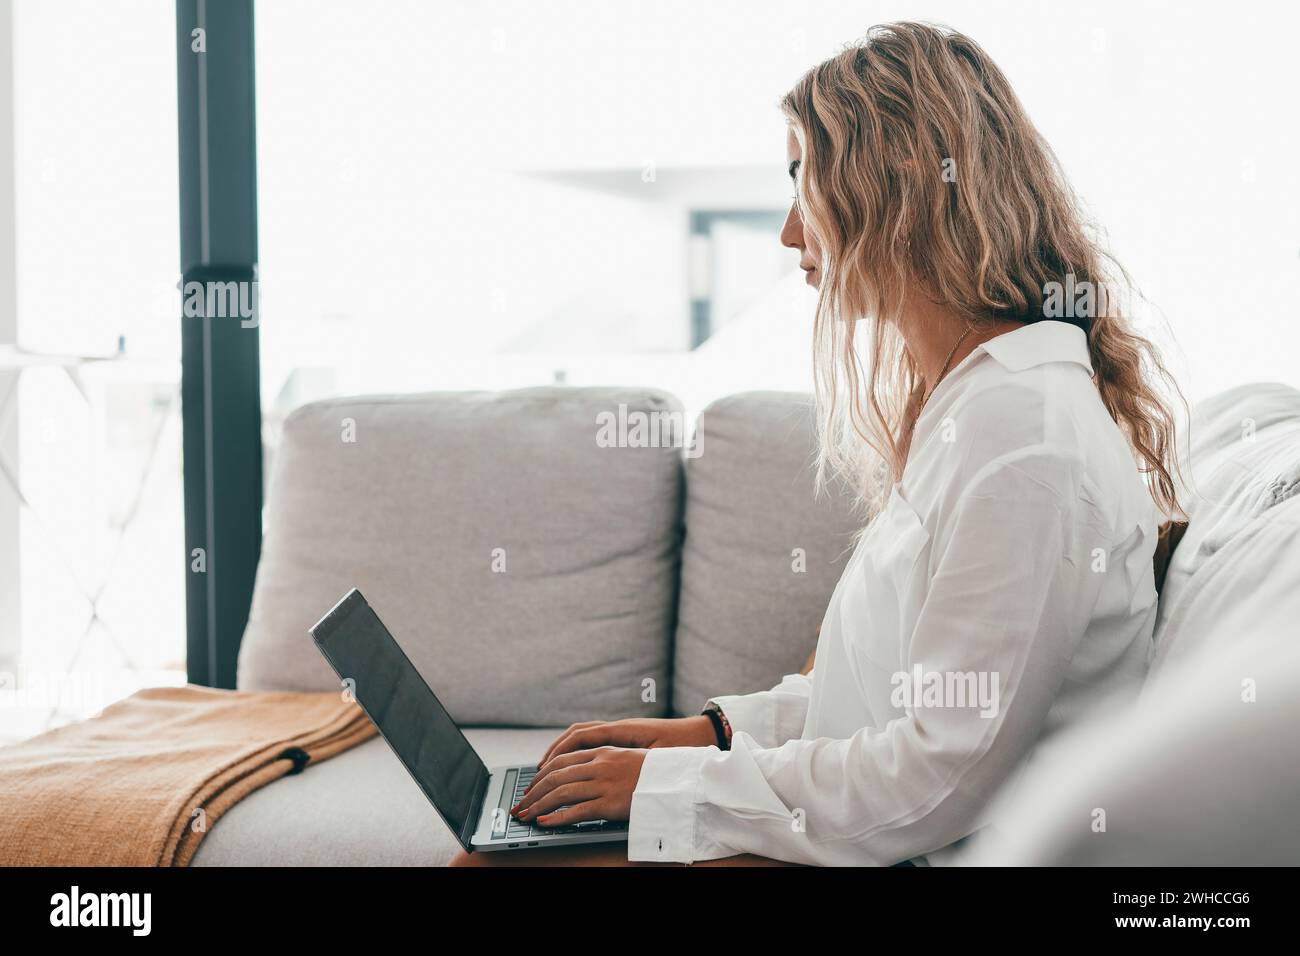 Porträt einer jungen attraktiven blonden Frau, die einen Laptop-pc auf der Couch benutzt und zu Hause im Internet surft. Working Online Concept Lifestyle Stockfoto